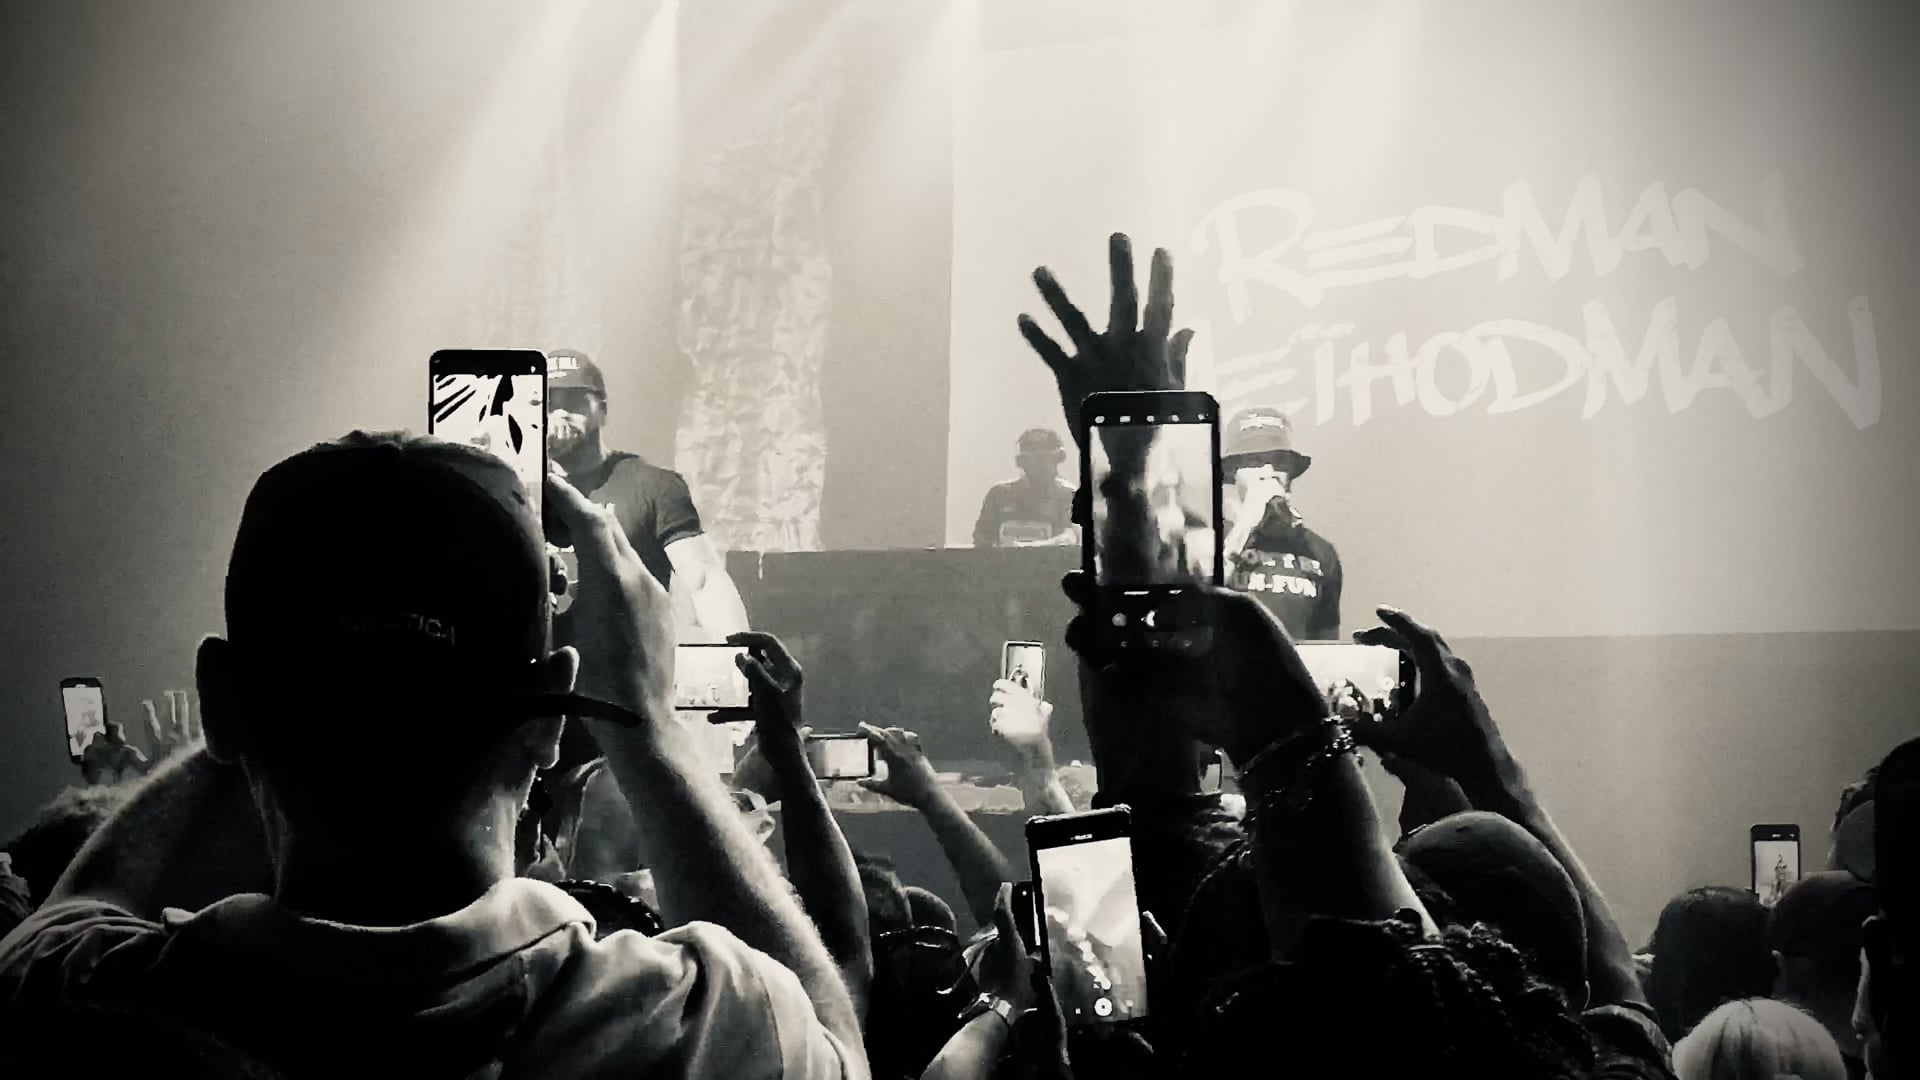 Method Man / Redman @ Foxwoods - Bis - Rapper's Delight